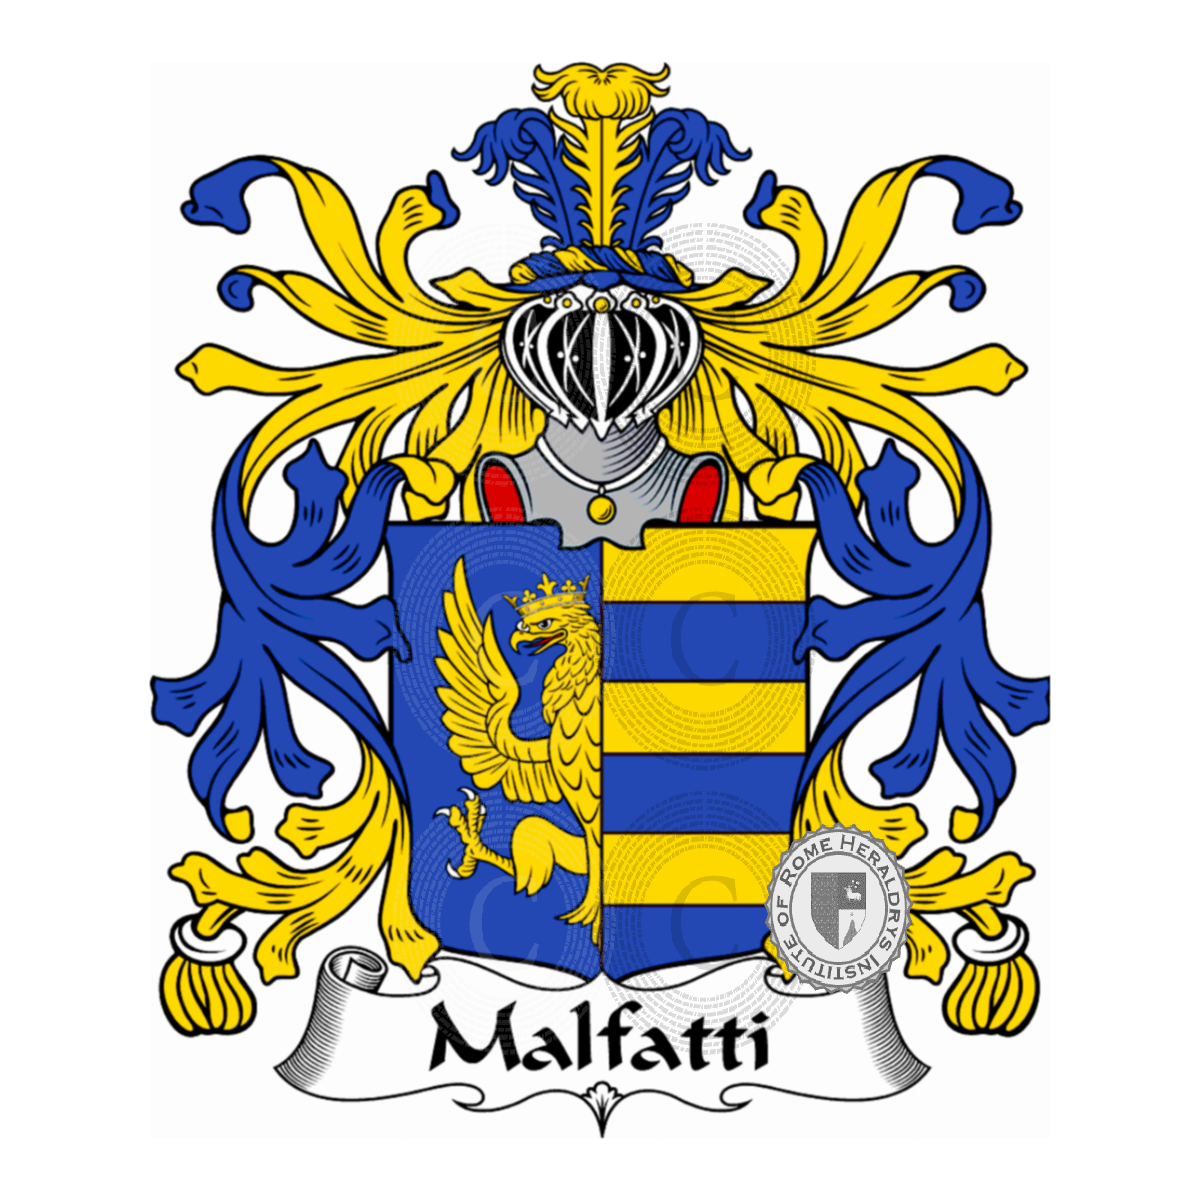 Wappen der FamilieMalfatti, Malafati,Malafatti